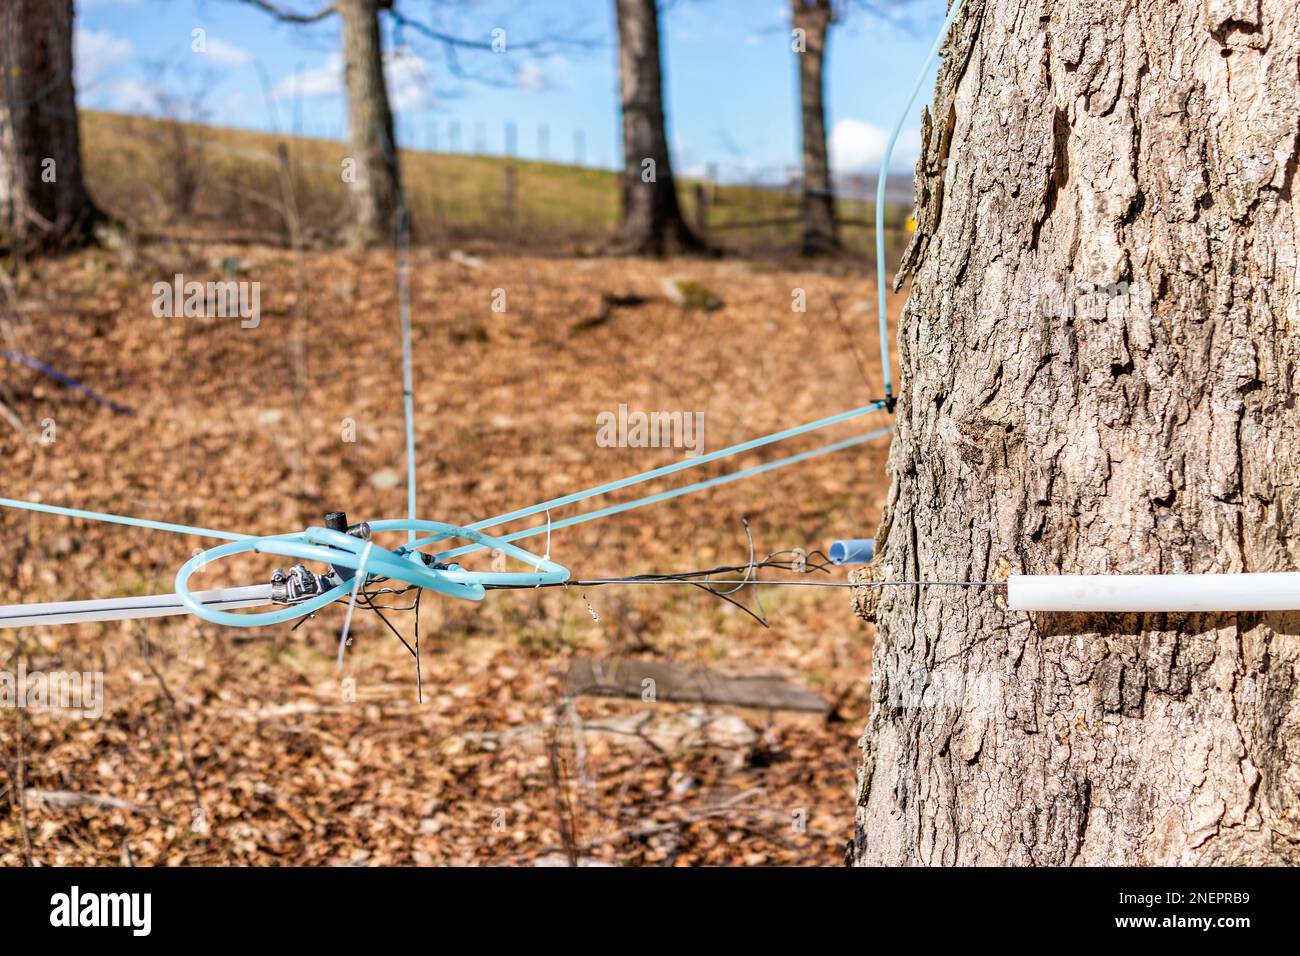 Le sirop d'érable tapote les tuyaux sur les érables en ramassant la sève avec des tubes reliés entre les arbres dans le comté de Highland, en Virginie, au printemps Banque D'Images